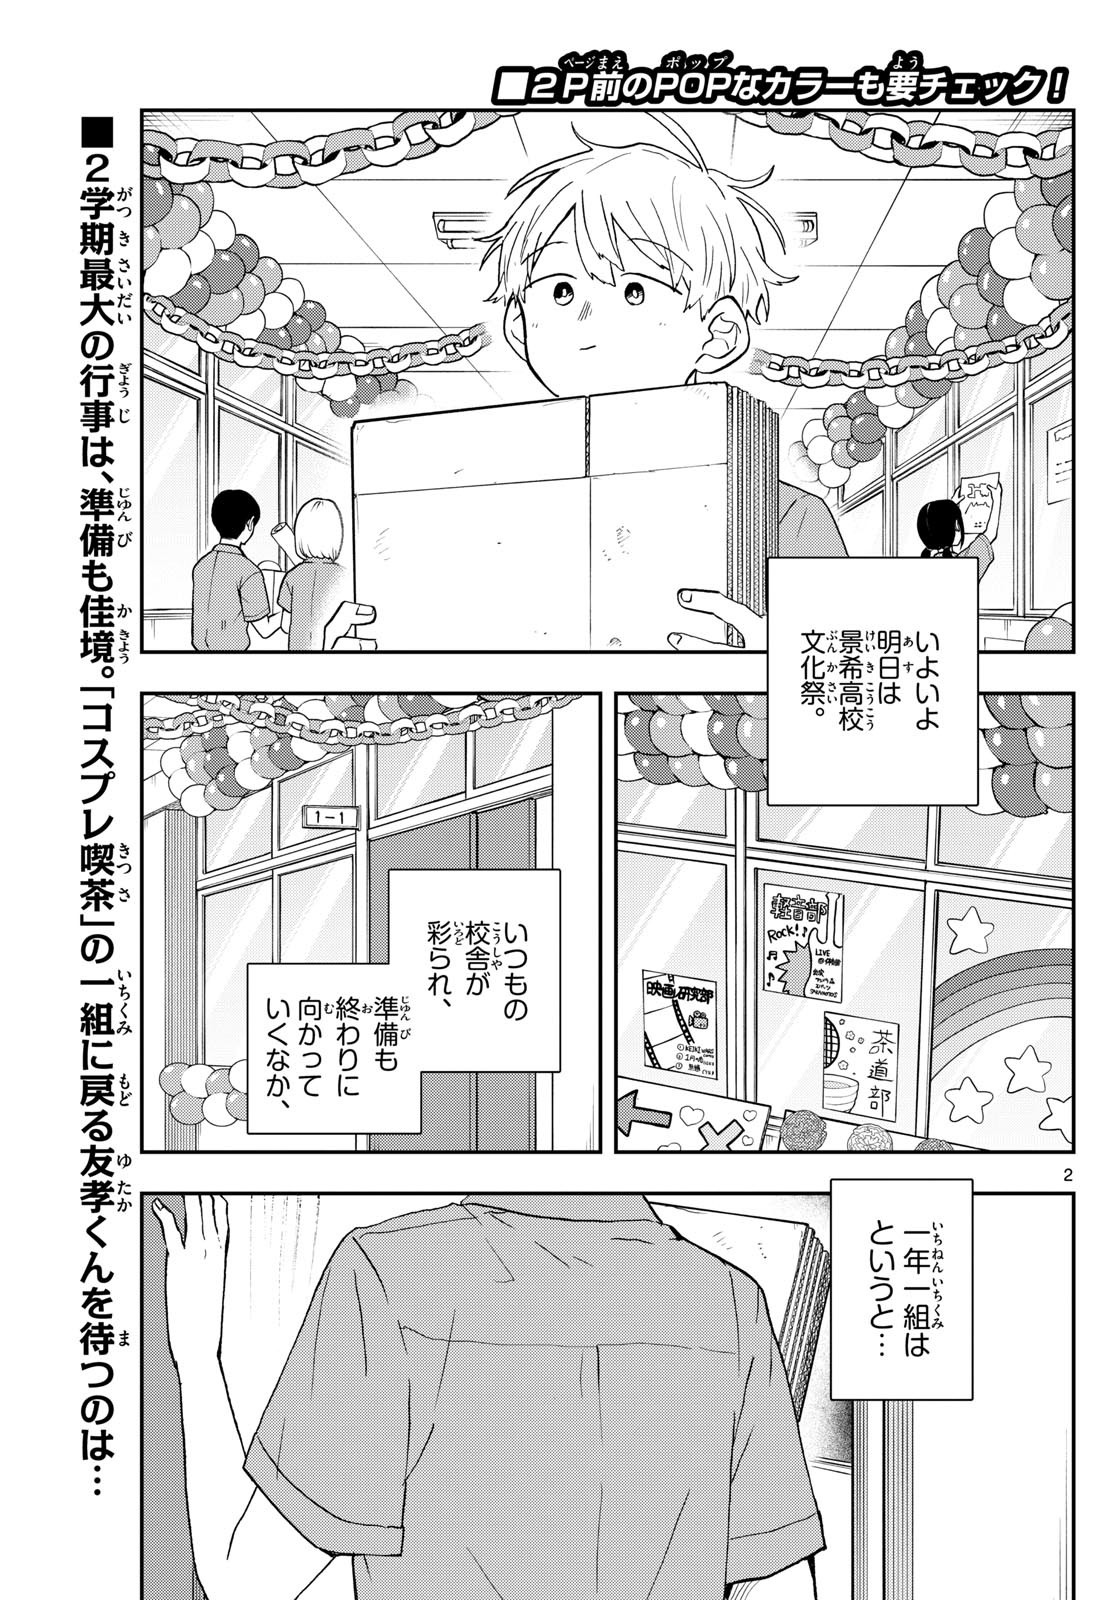 Omori Tsumiki to Kinichijou. - Chapter 29 - Page 2